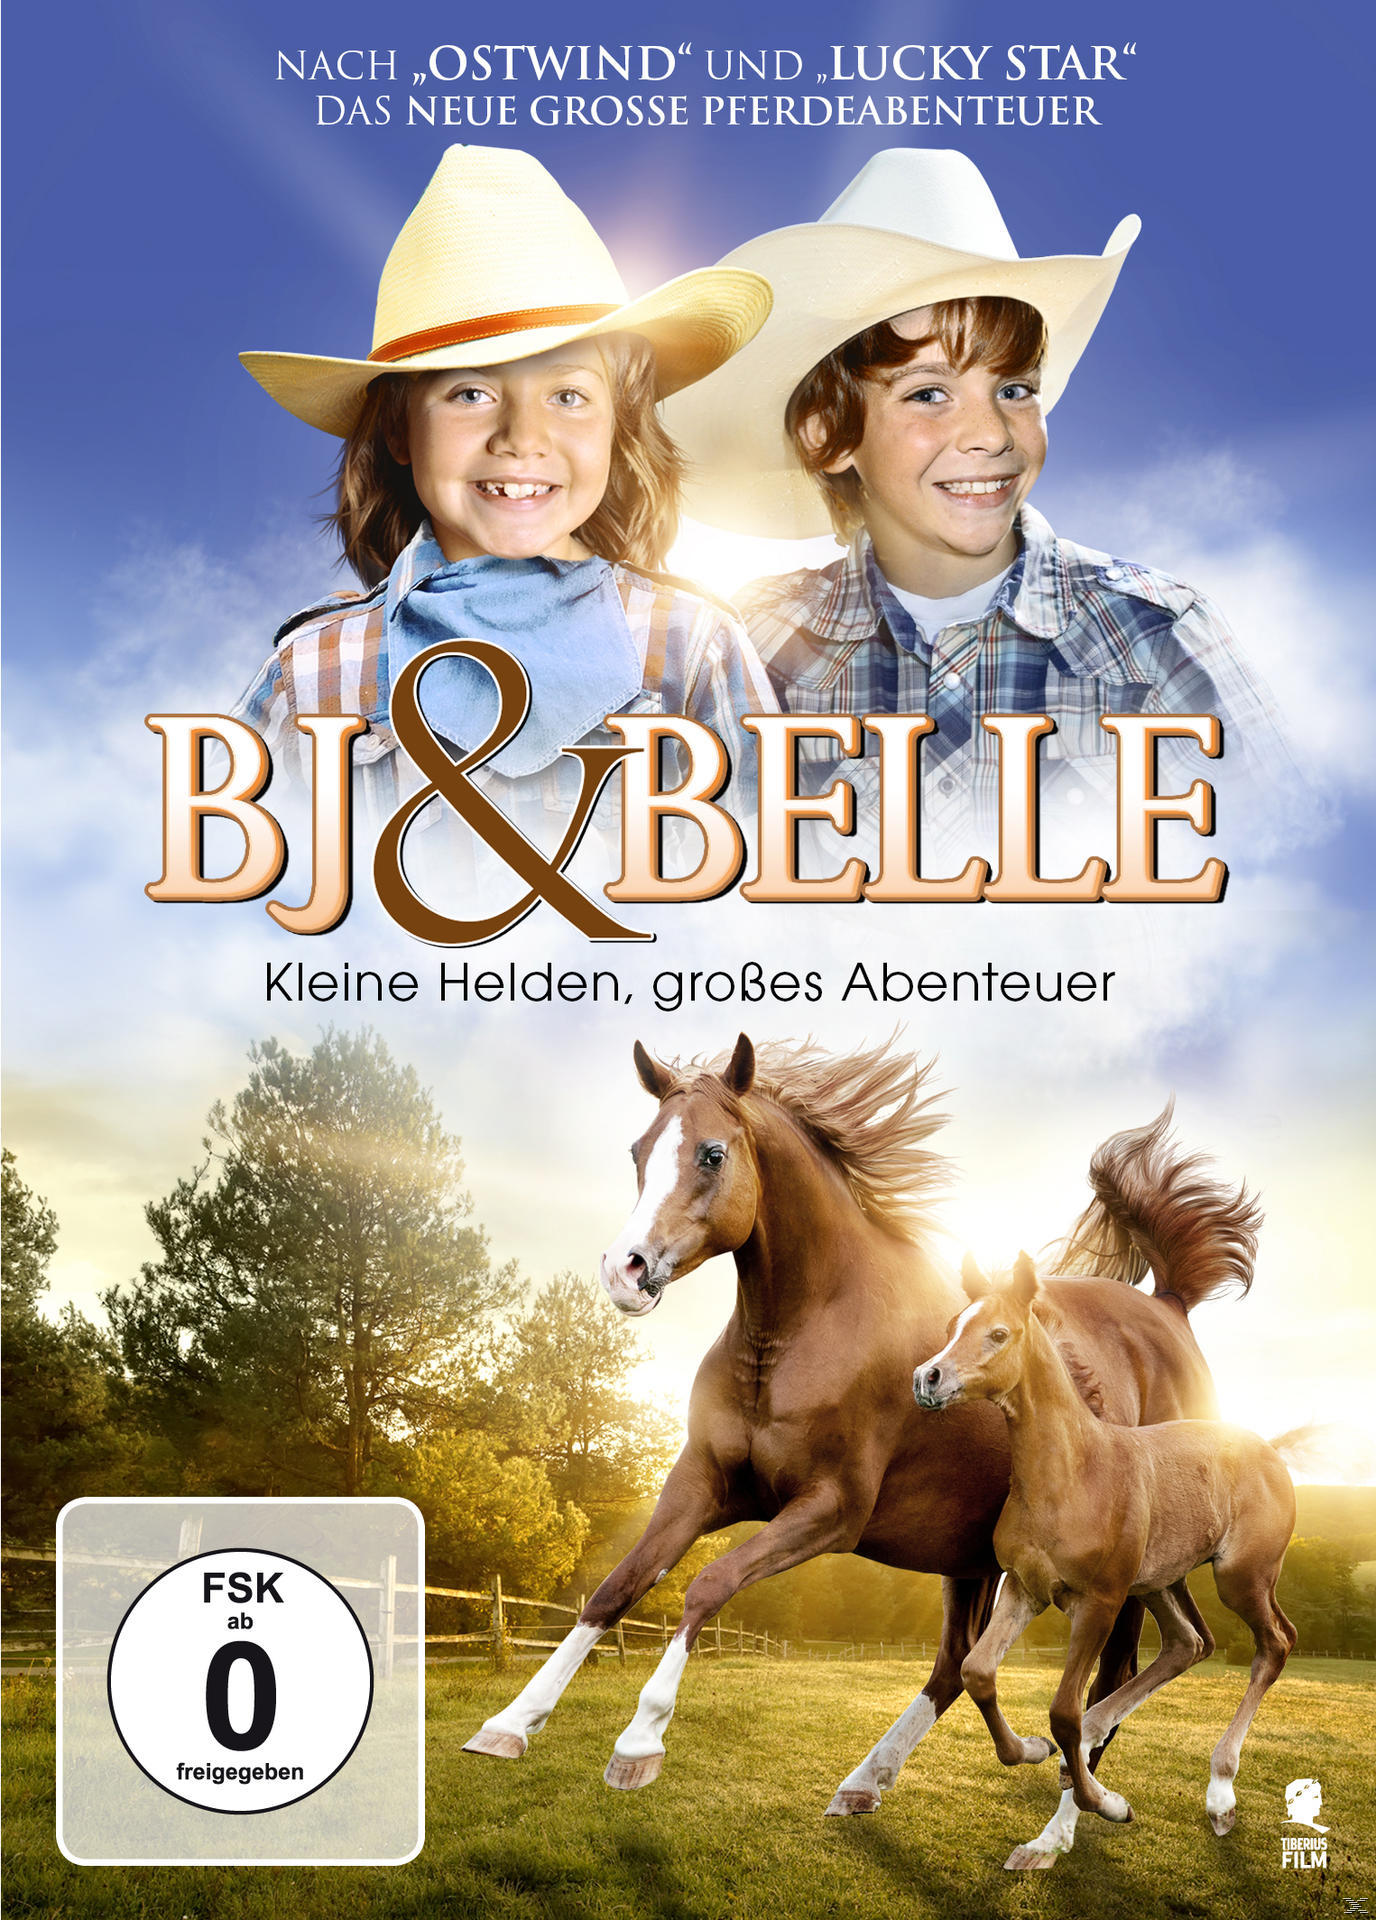 BJ & – DVD große kleine Helden, Belle Abenteuer